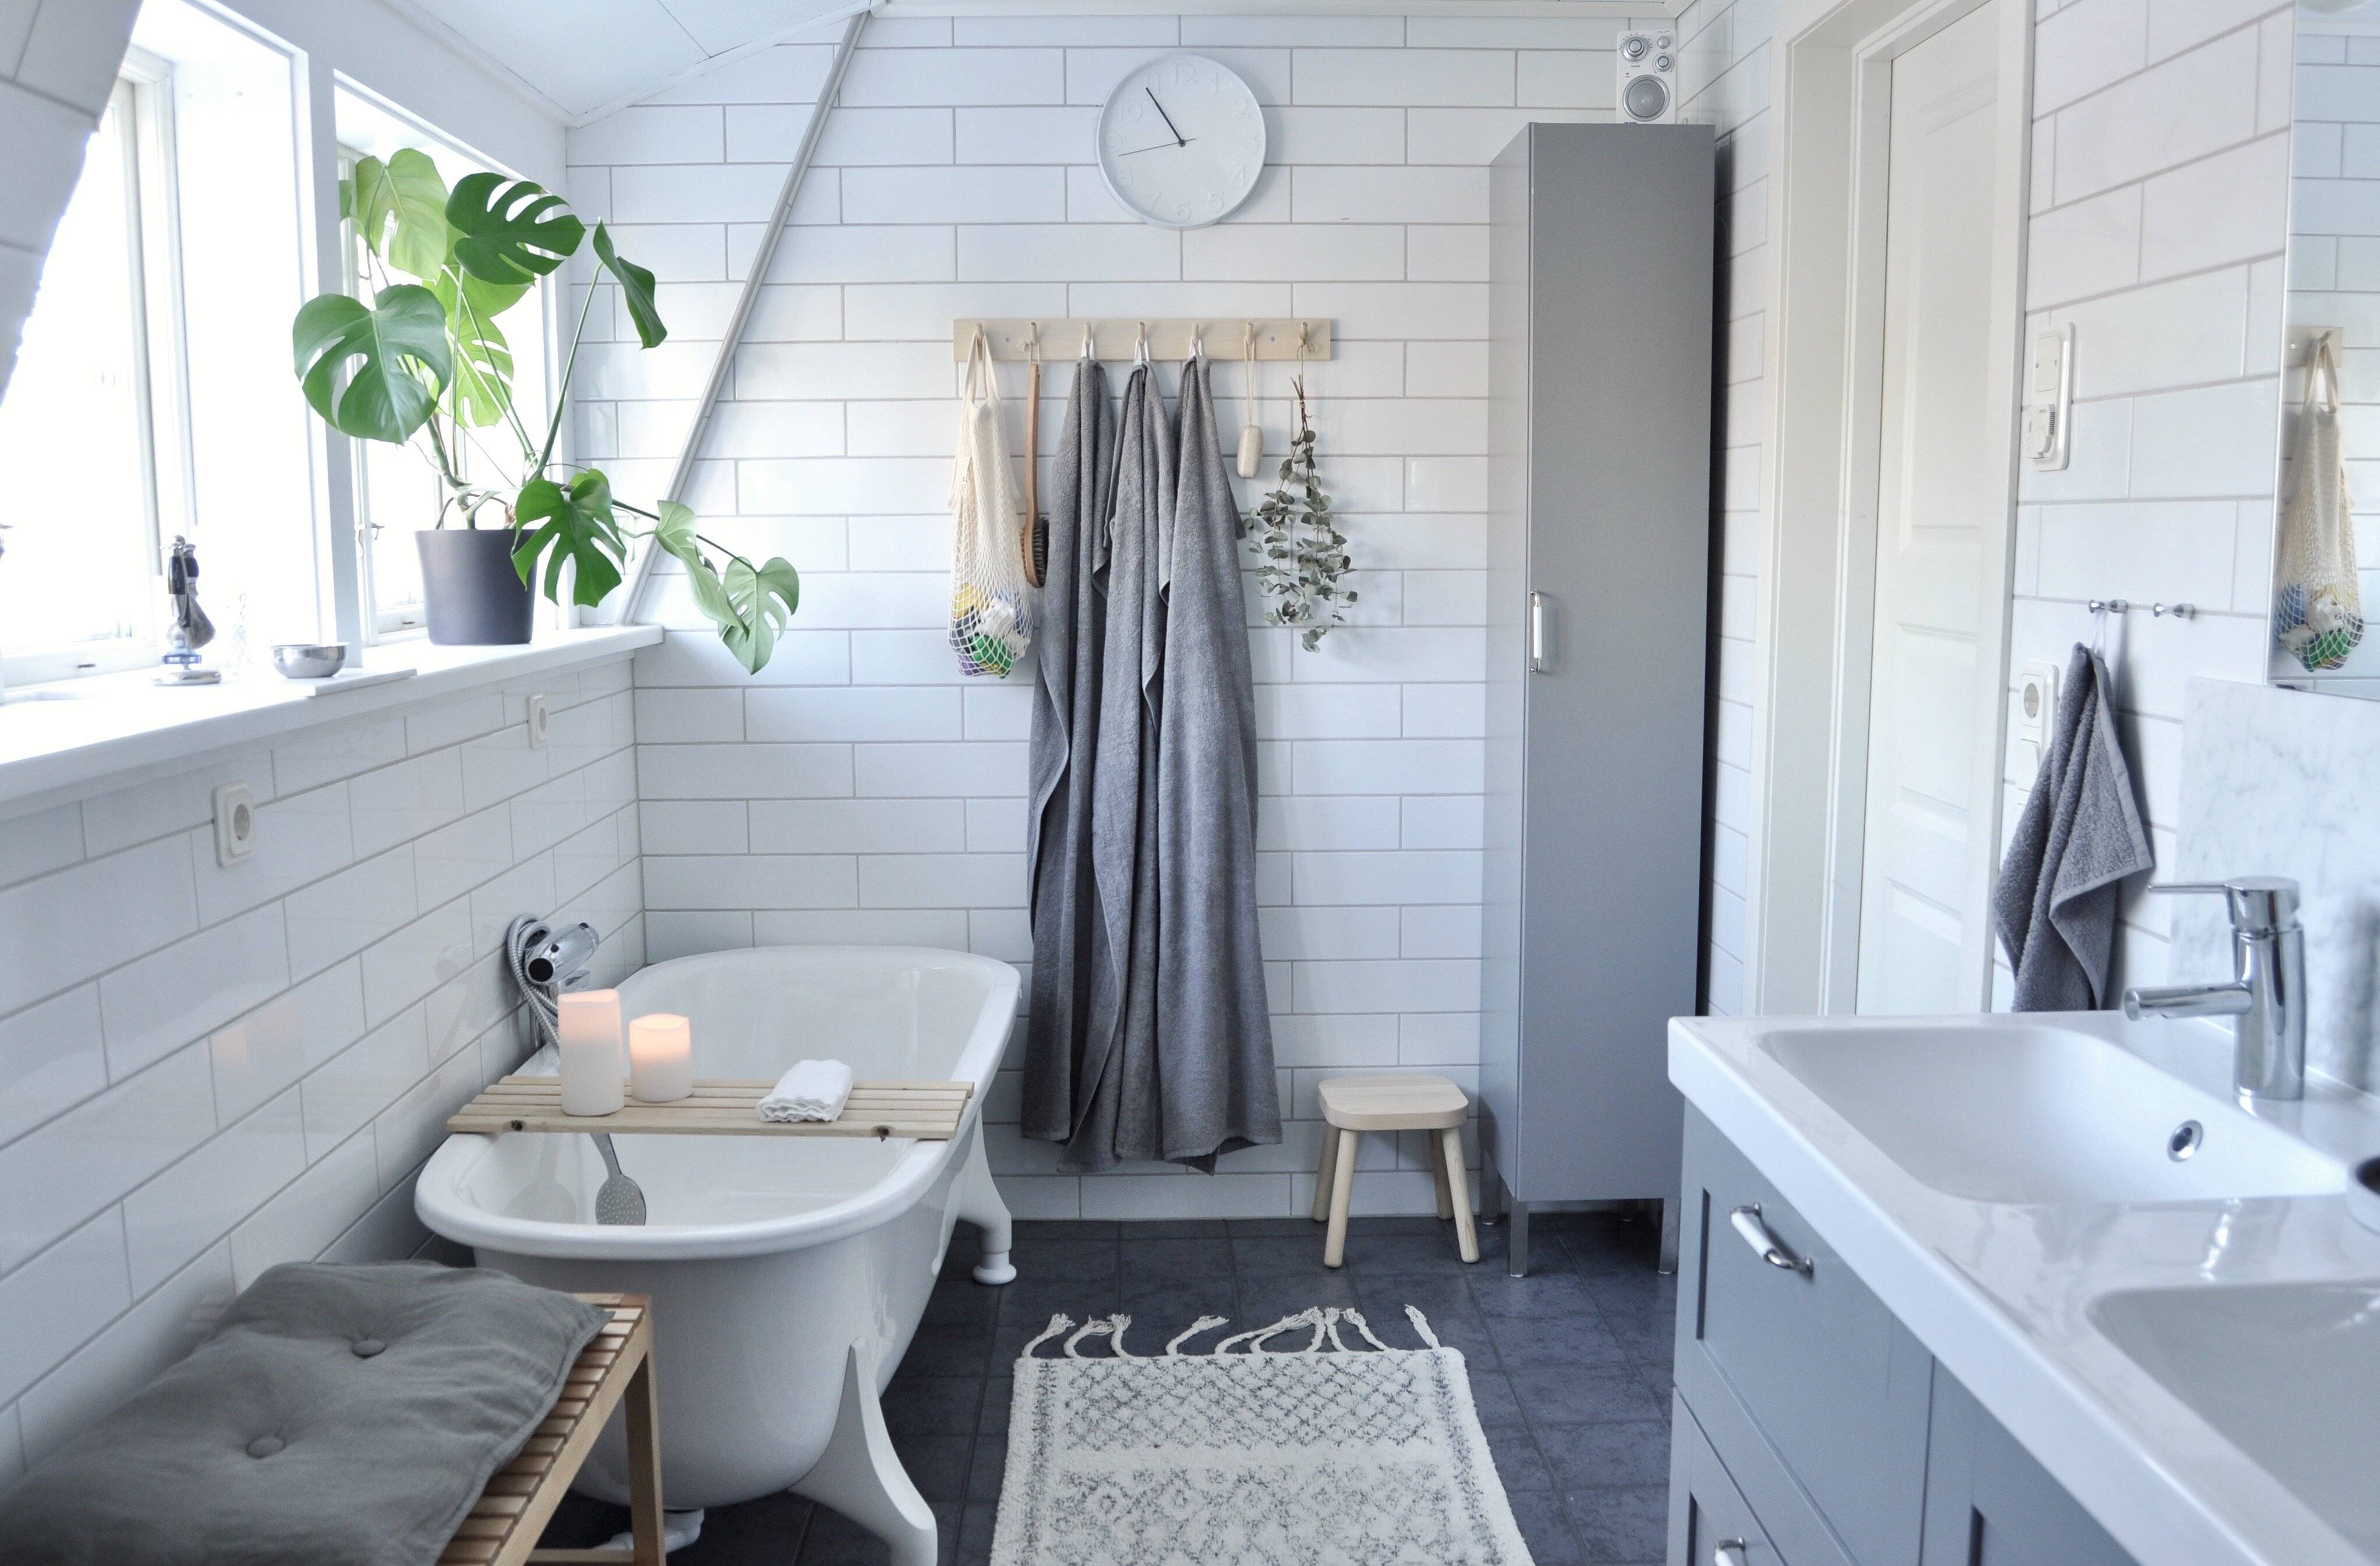 Ванная комната в скандинавском стиле (60 фото): дизайн интерьера, идеи для ремонта